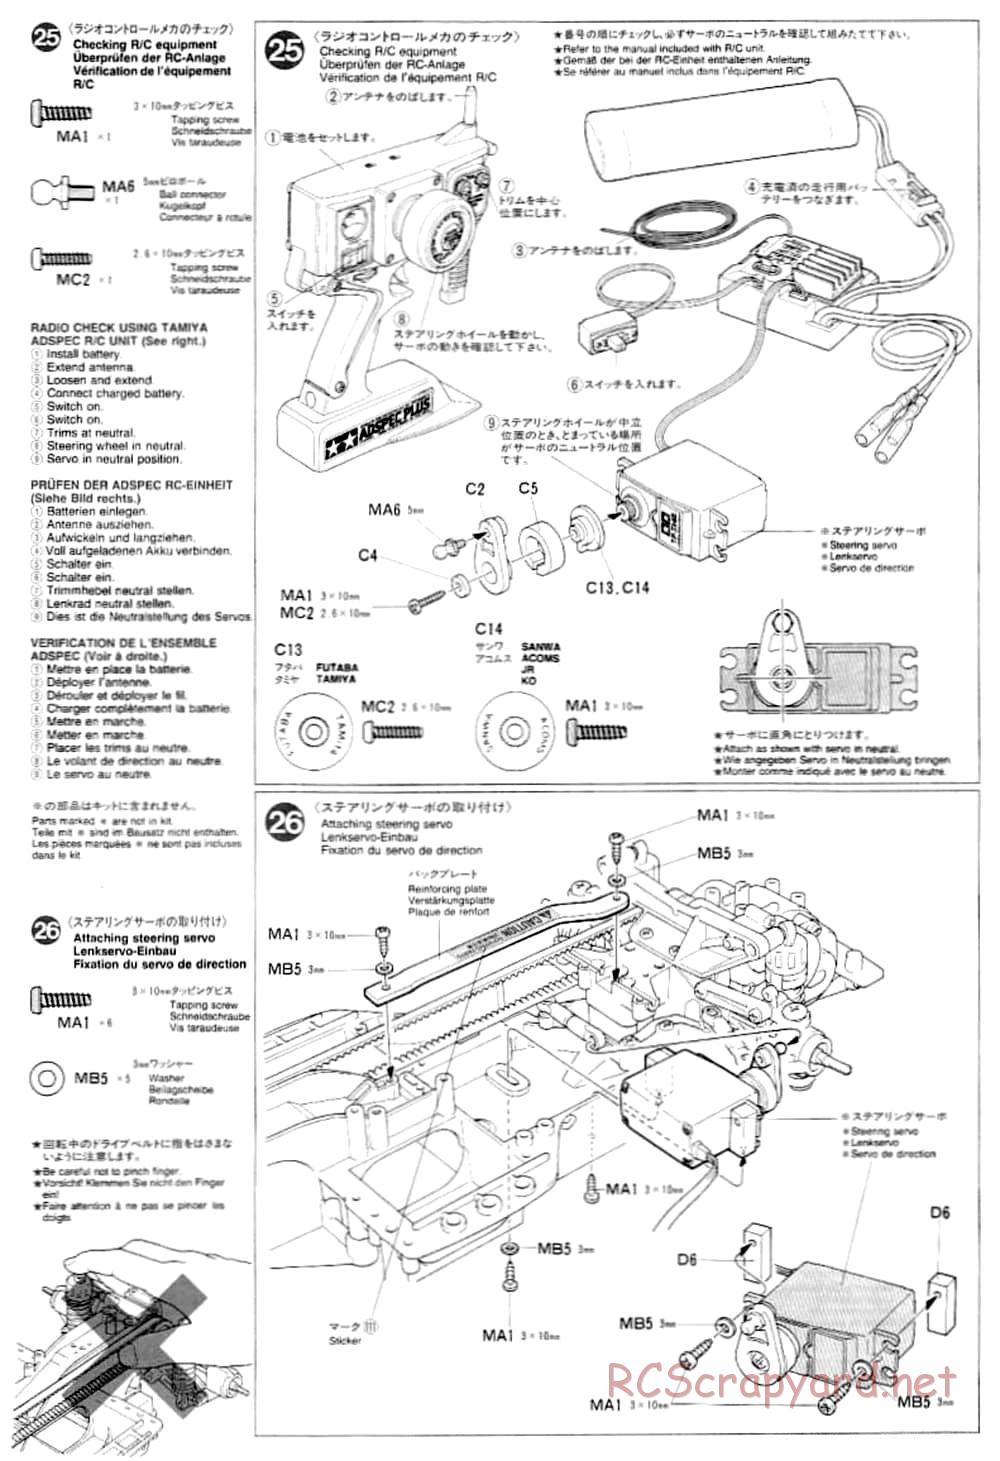 Tamiya - TA-03F Chassis - Manual - Page 14